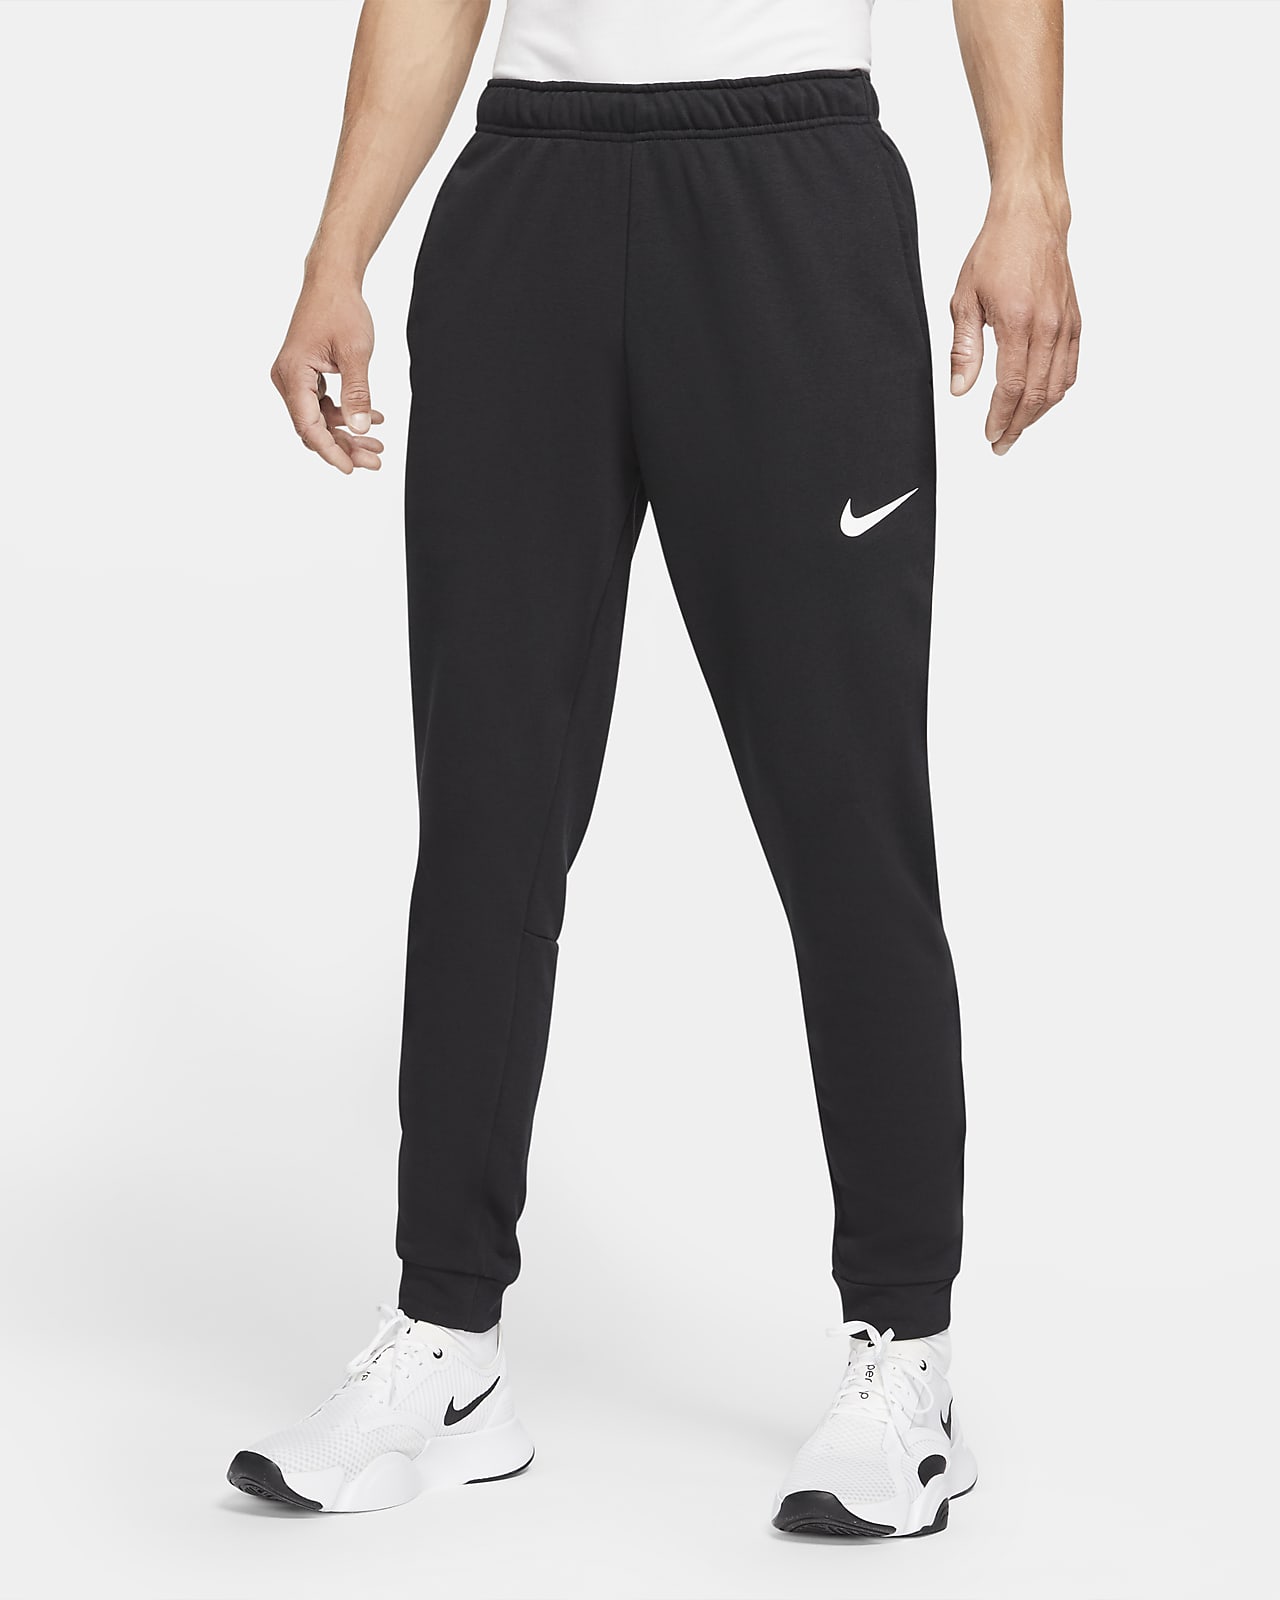 Pánské zúžené tréninkové kalhoty Nike Dri-FIT